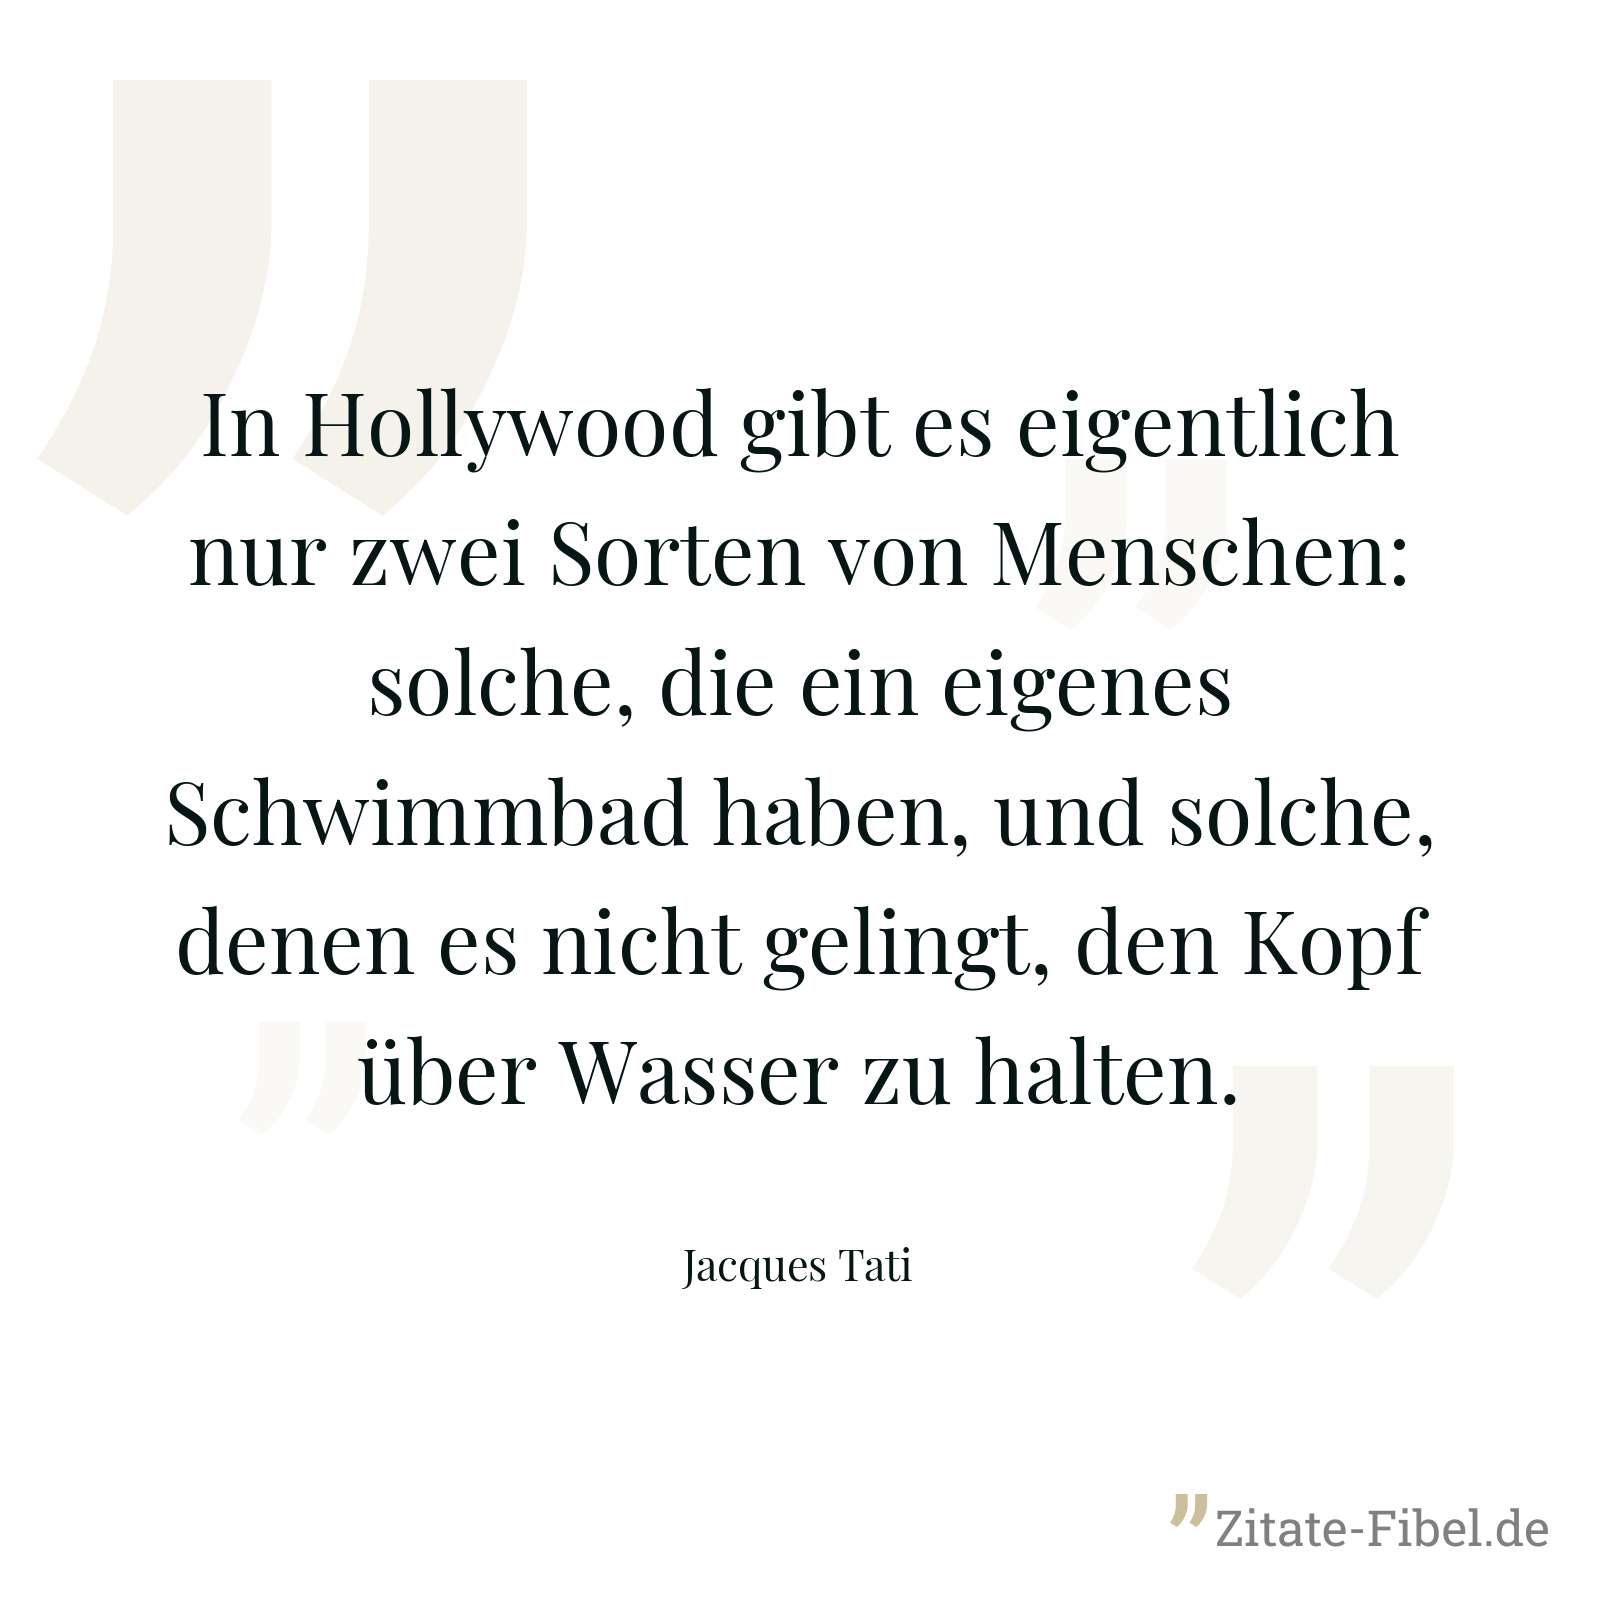 In Hollywood gibt es eigentlich nur zwei Sorten von Menschen: solche, die ein eigenes Schwimmbad haben, und solche, denen es nicht gelingt, den Kopf über Wasser zu halten. - Jacques Tati